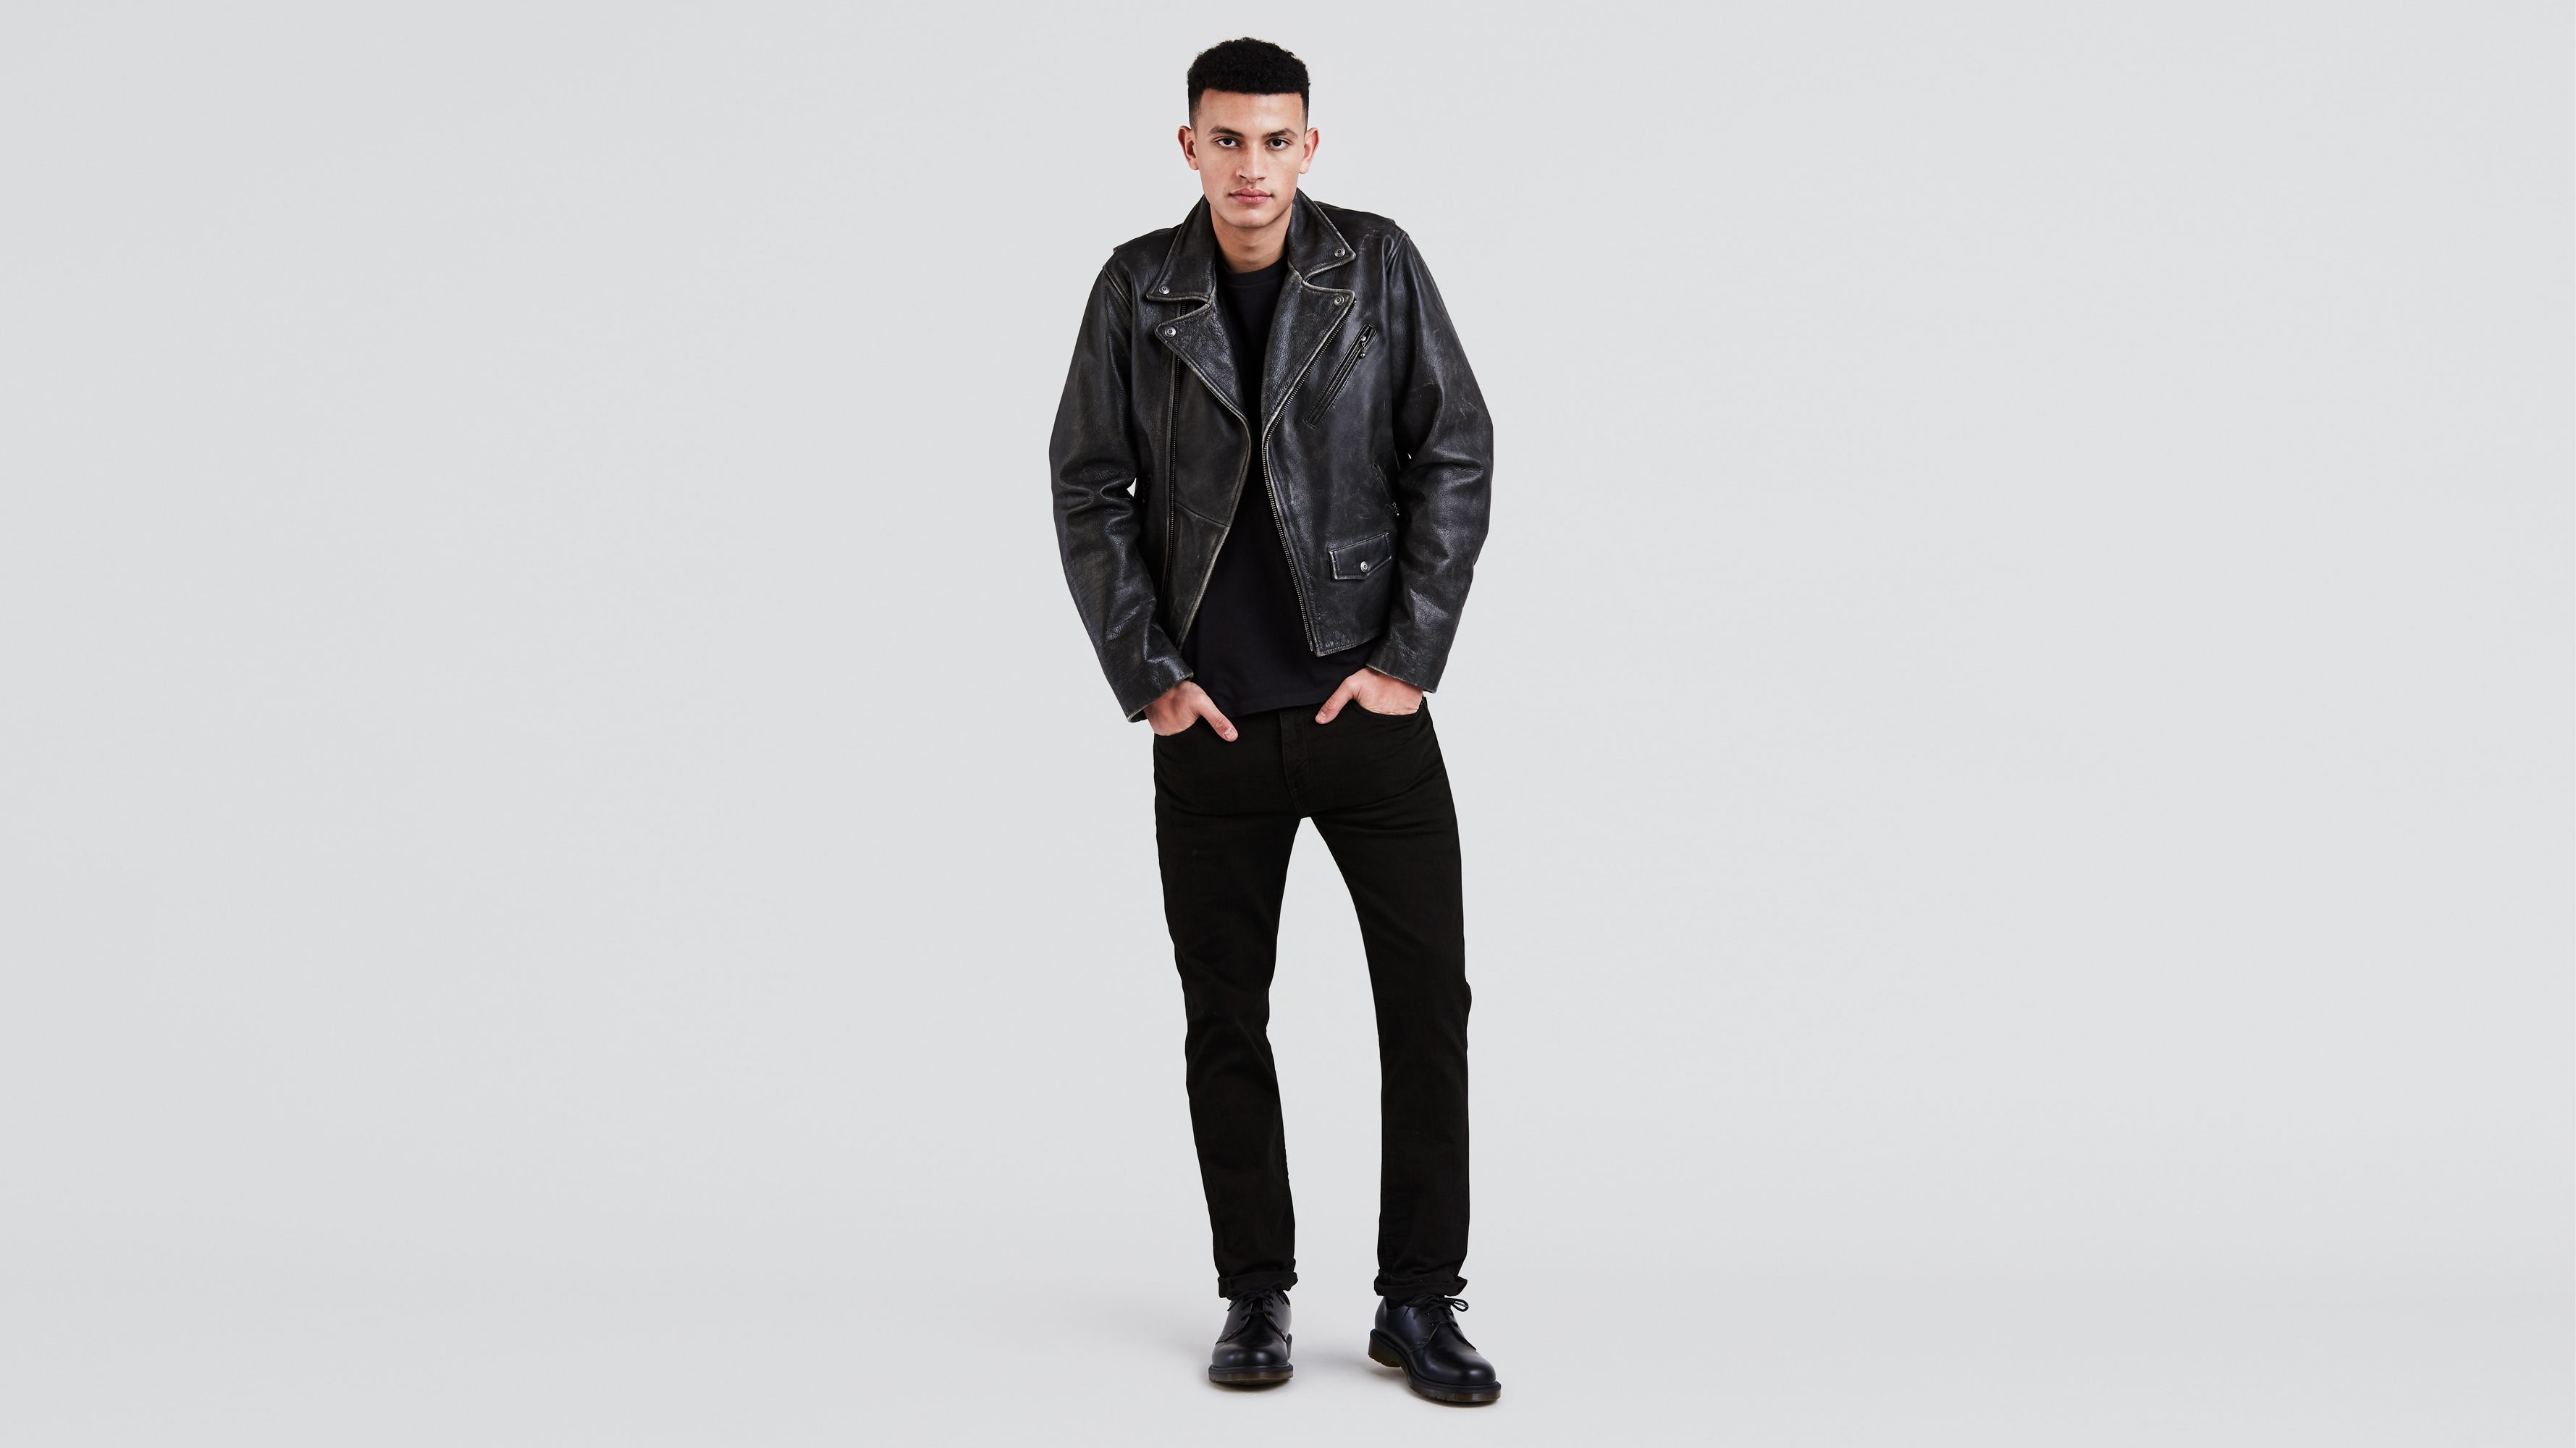 Men's Levi's 511™ Skinny Stretch Jeans in Black | Levi's®